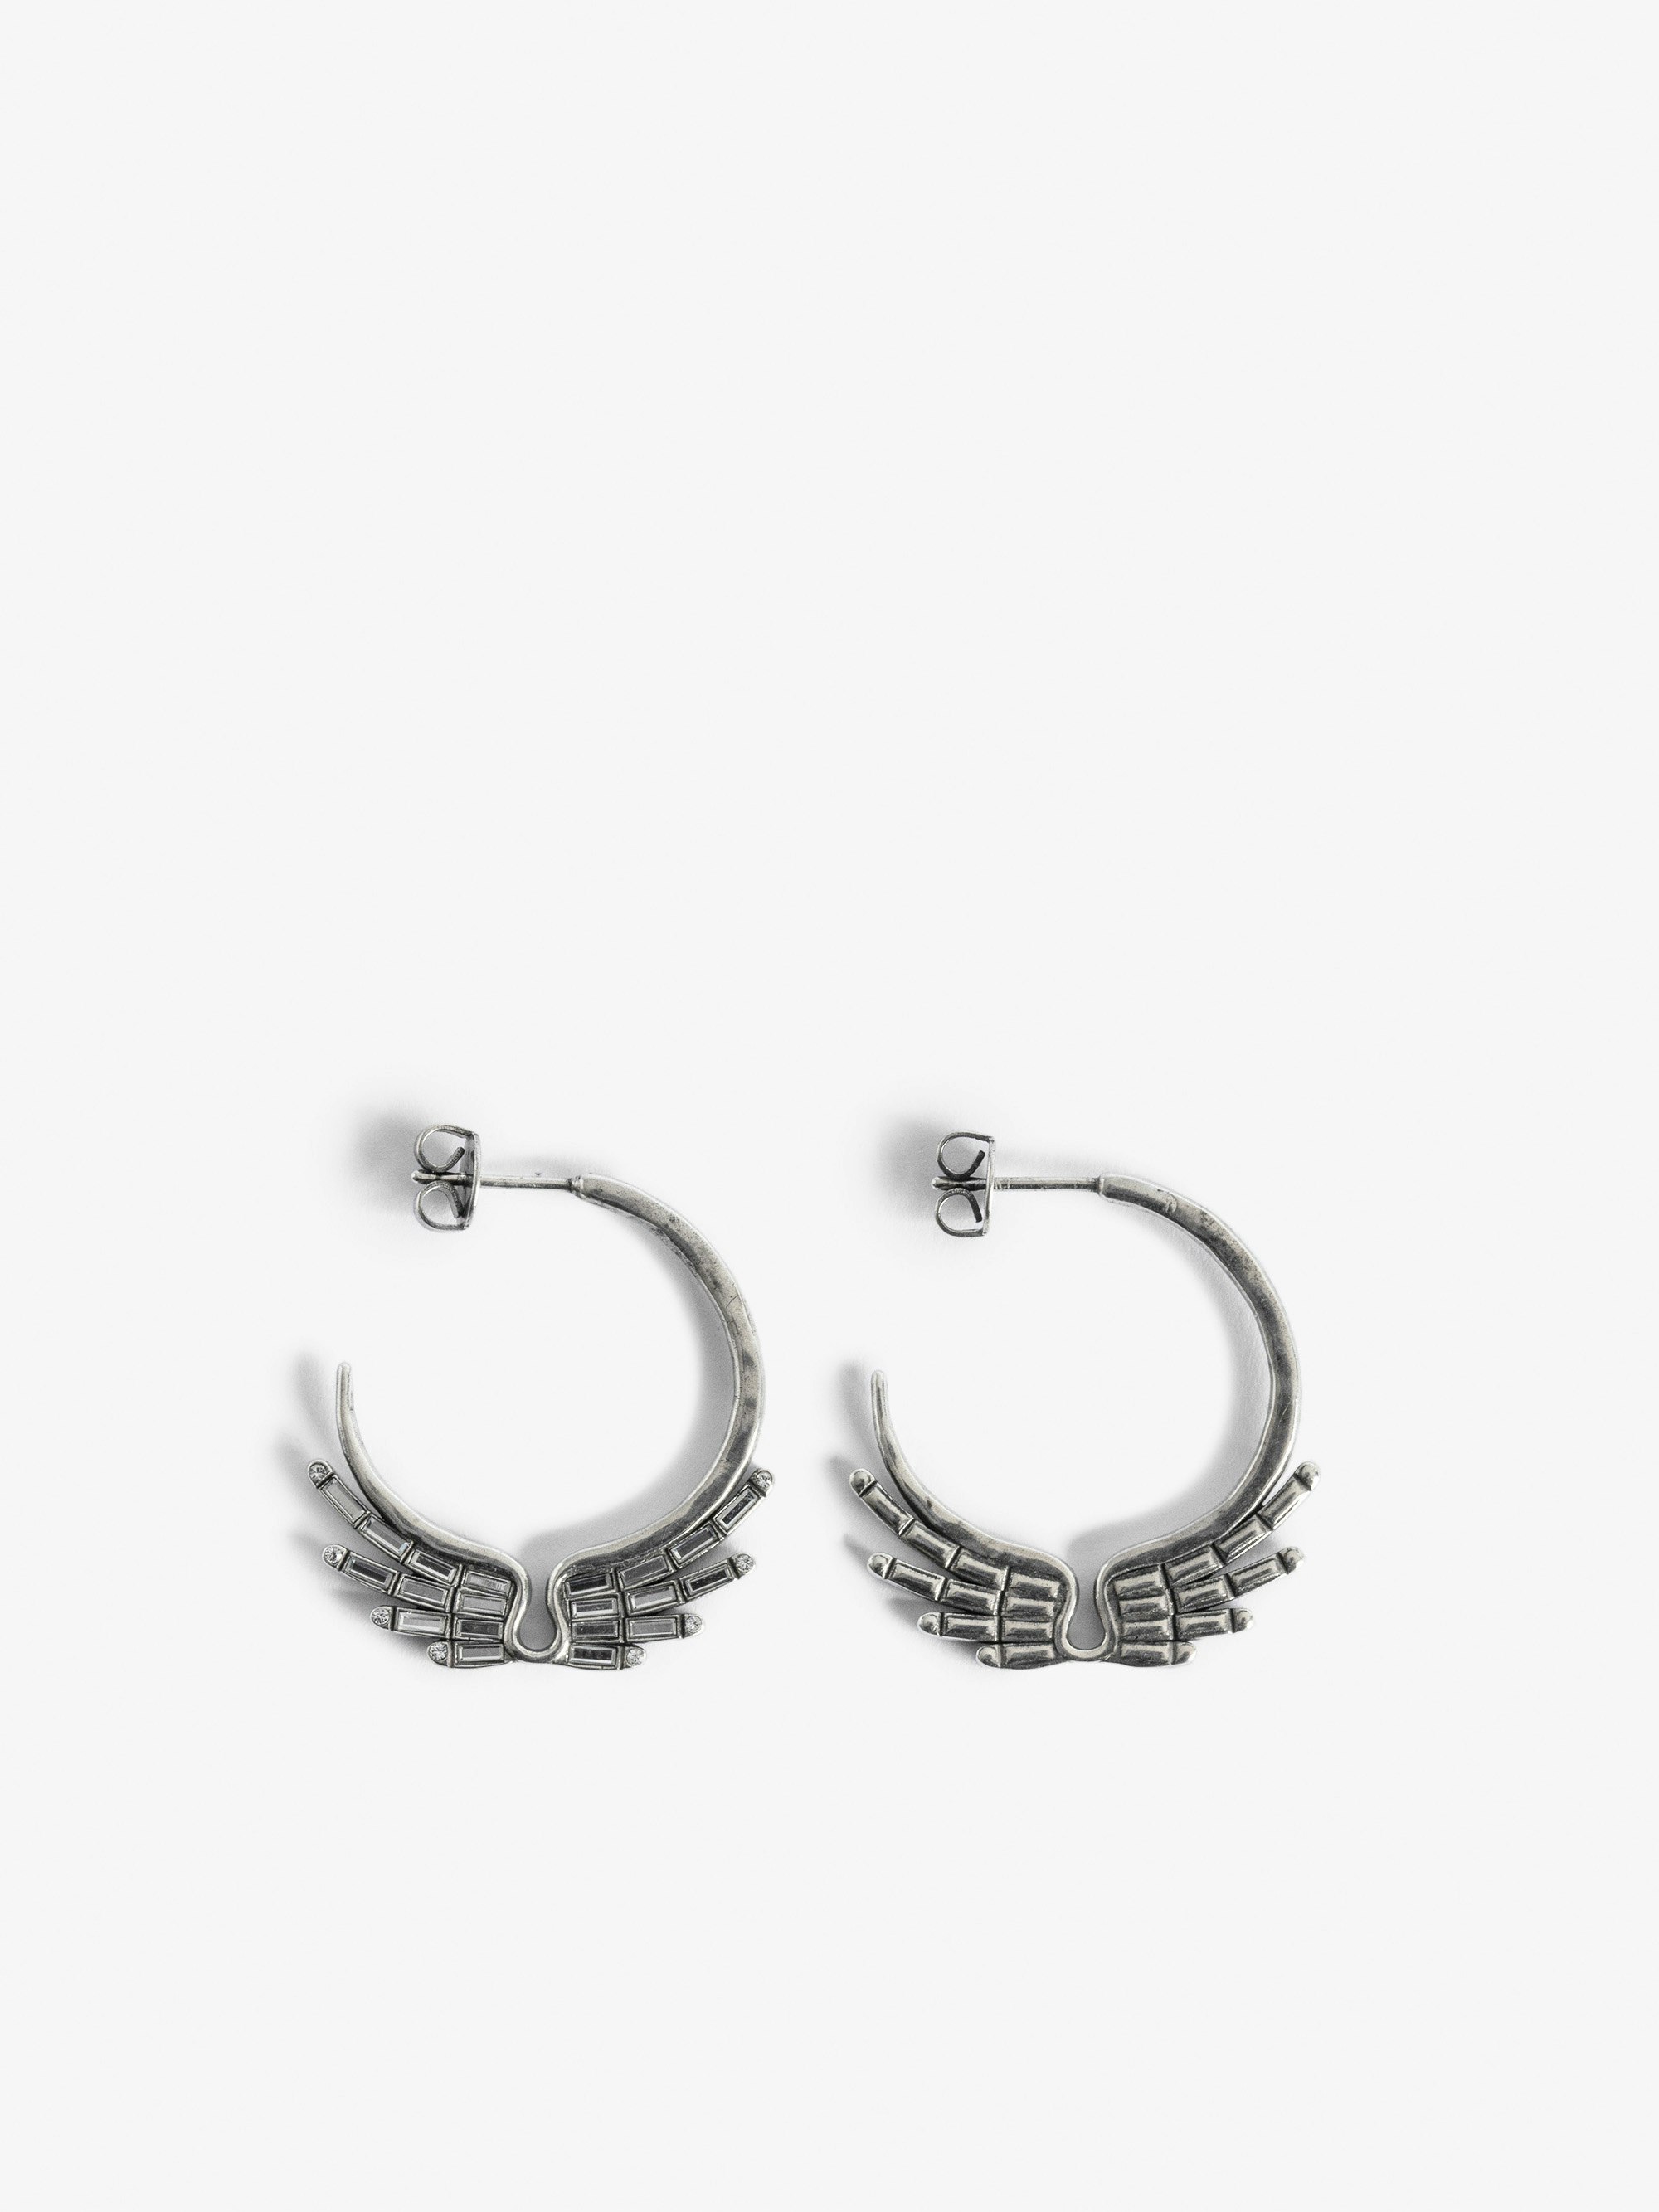 Rock Star Earrings - Silver-tone brass hoop earrings with diamanté wings.